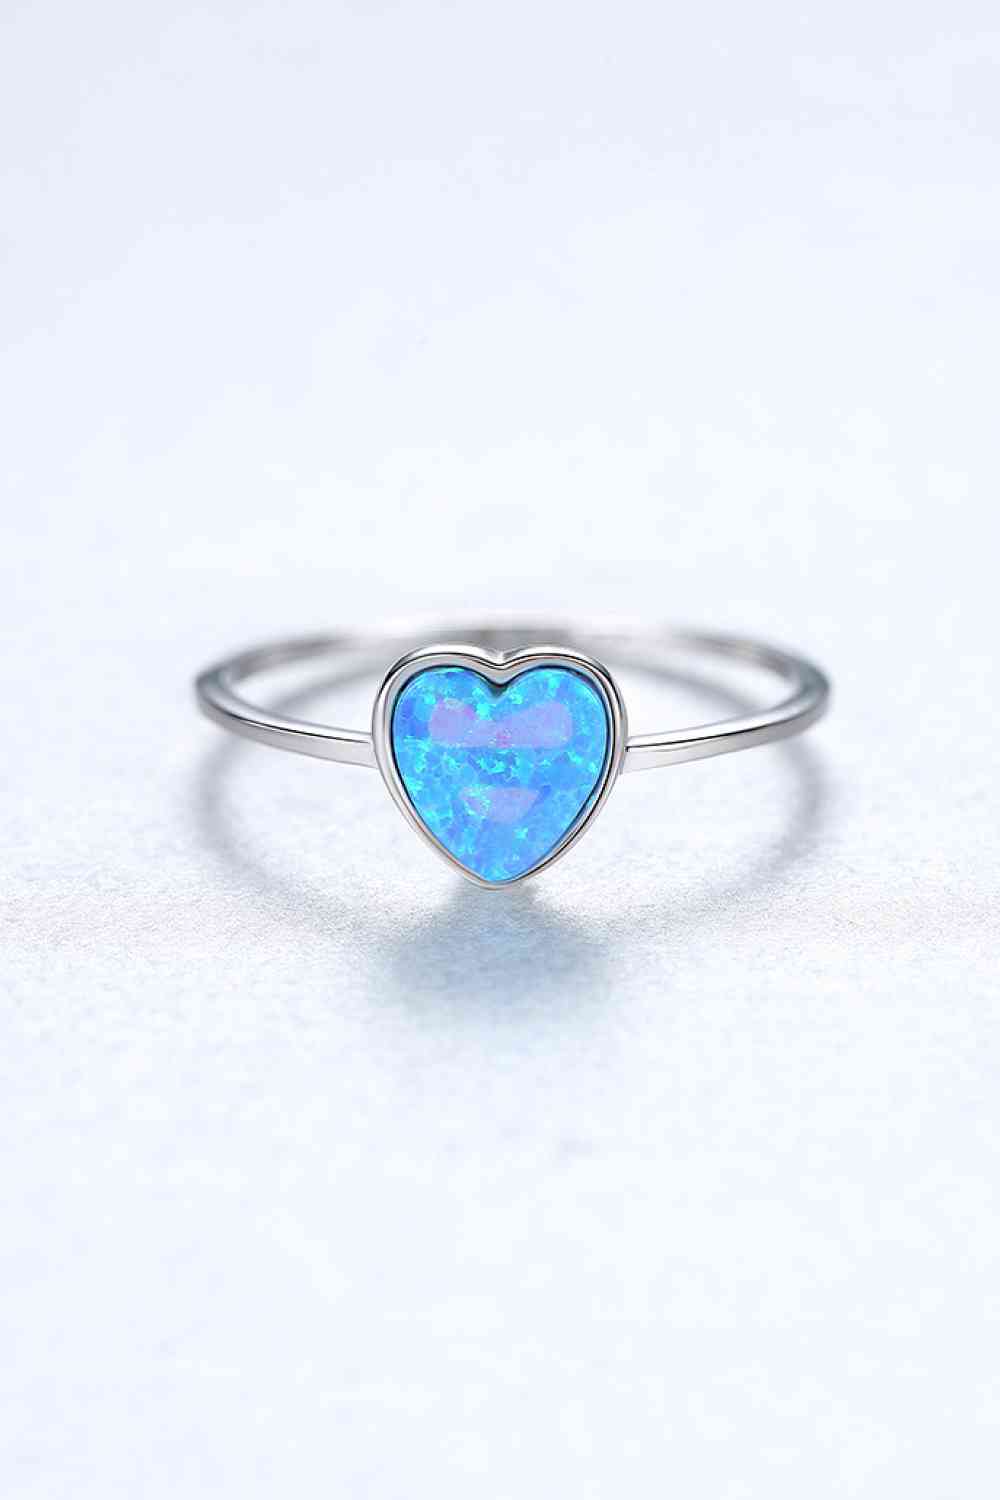 Opal Heart 925 Sterling Silver Ring Sky Blue